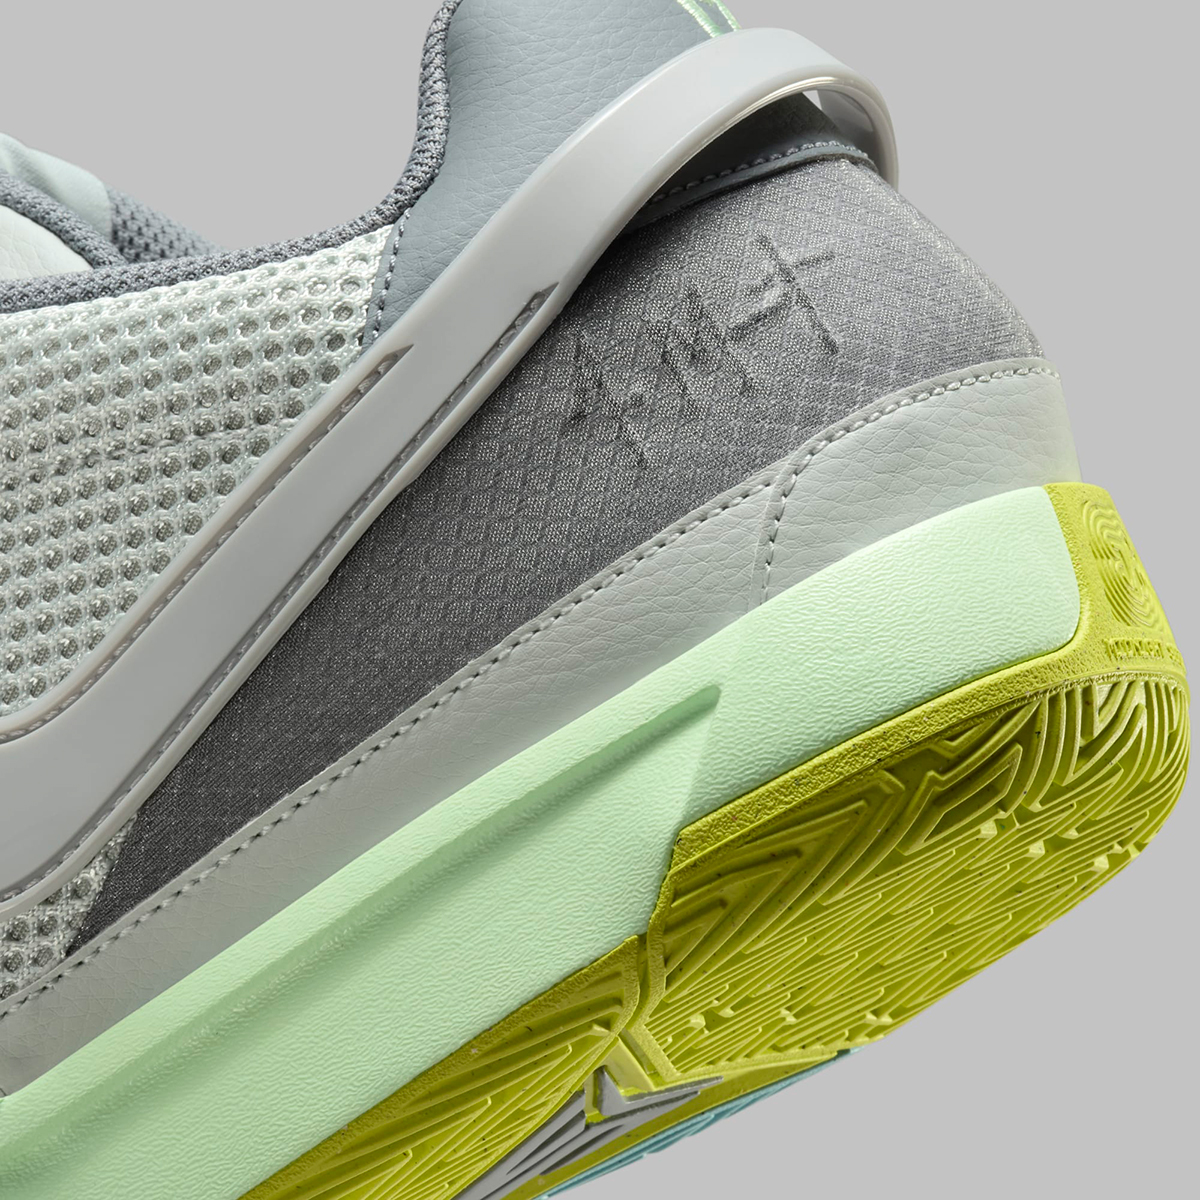 Nike Ja 2 Silver Green Fq4796 003 Release Date 5